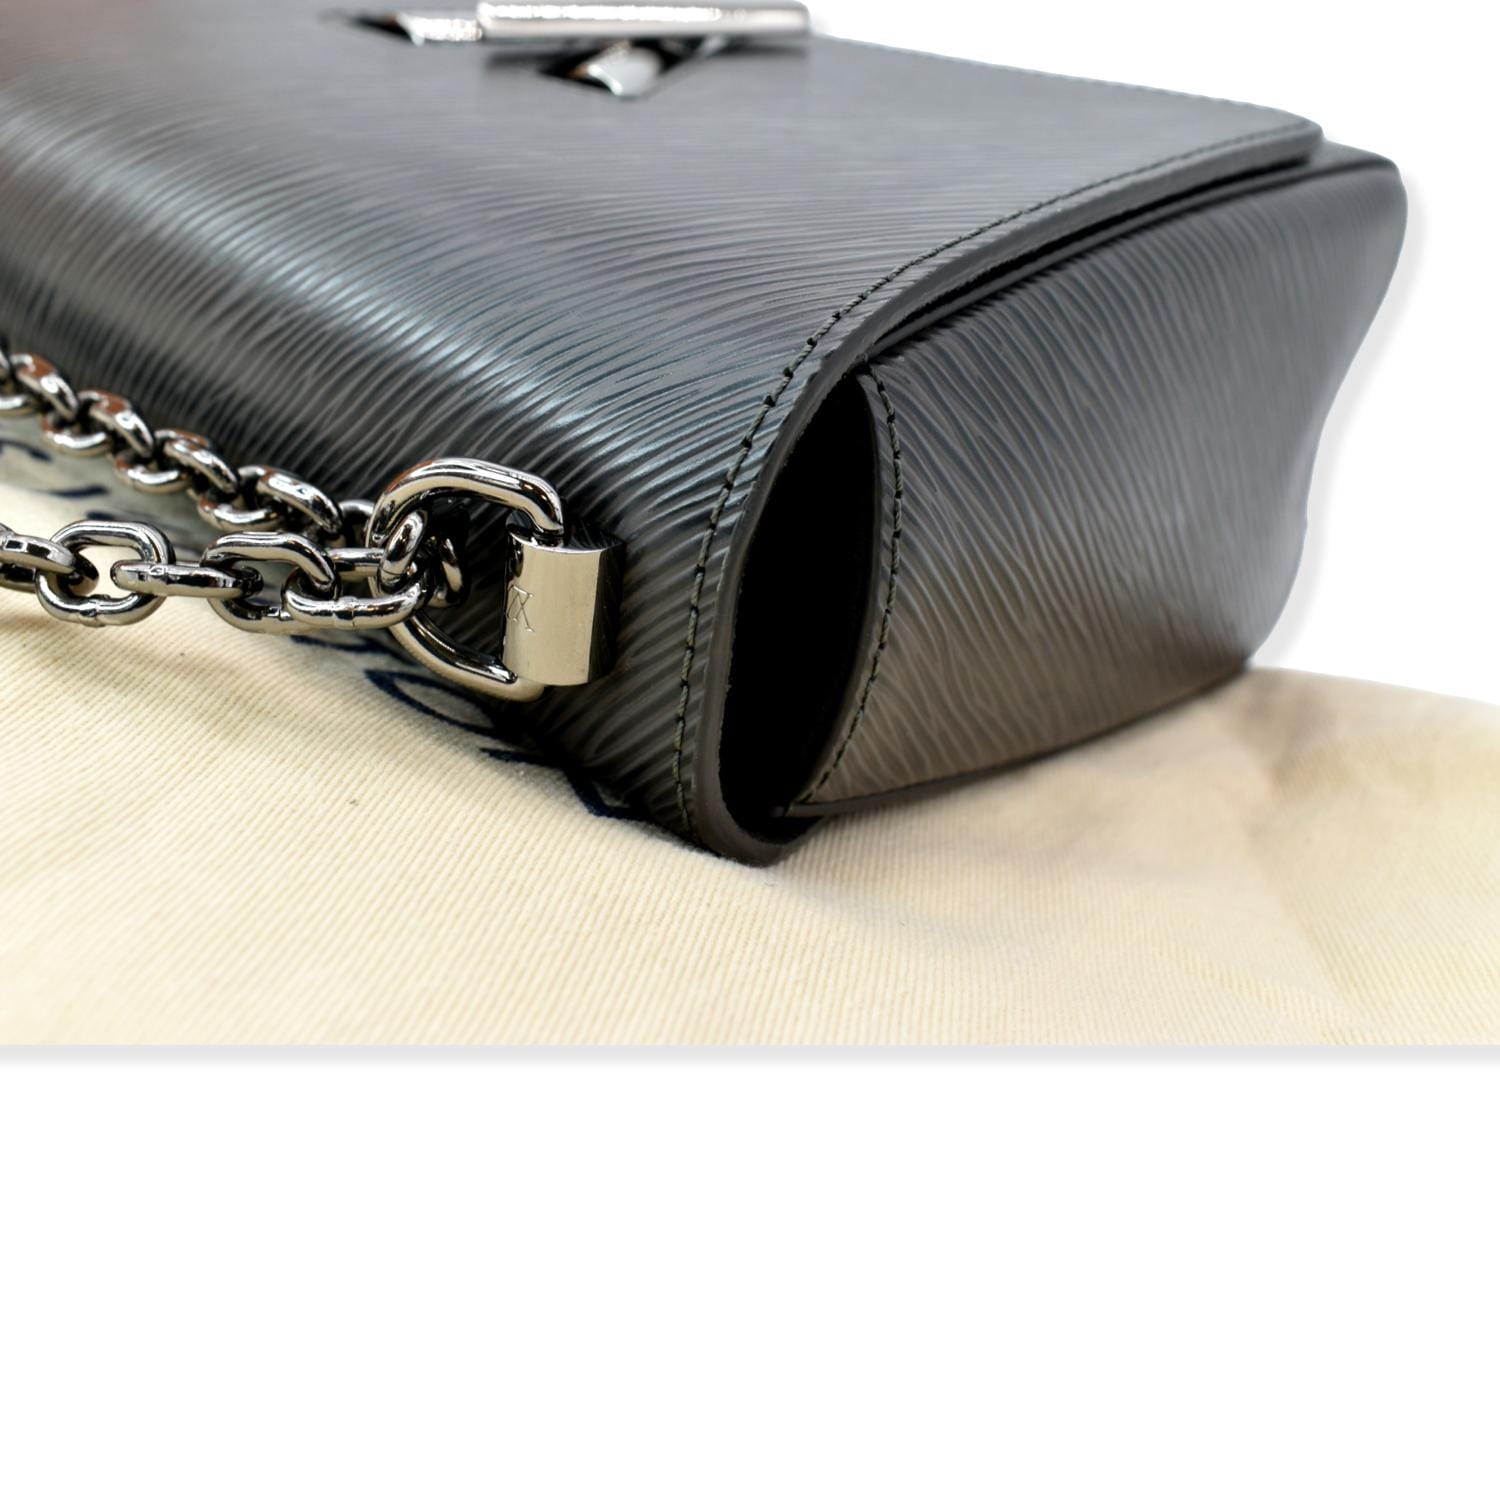 Louis Vuitton Twist Chain Wallet Epi Grained Leather Black